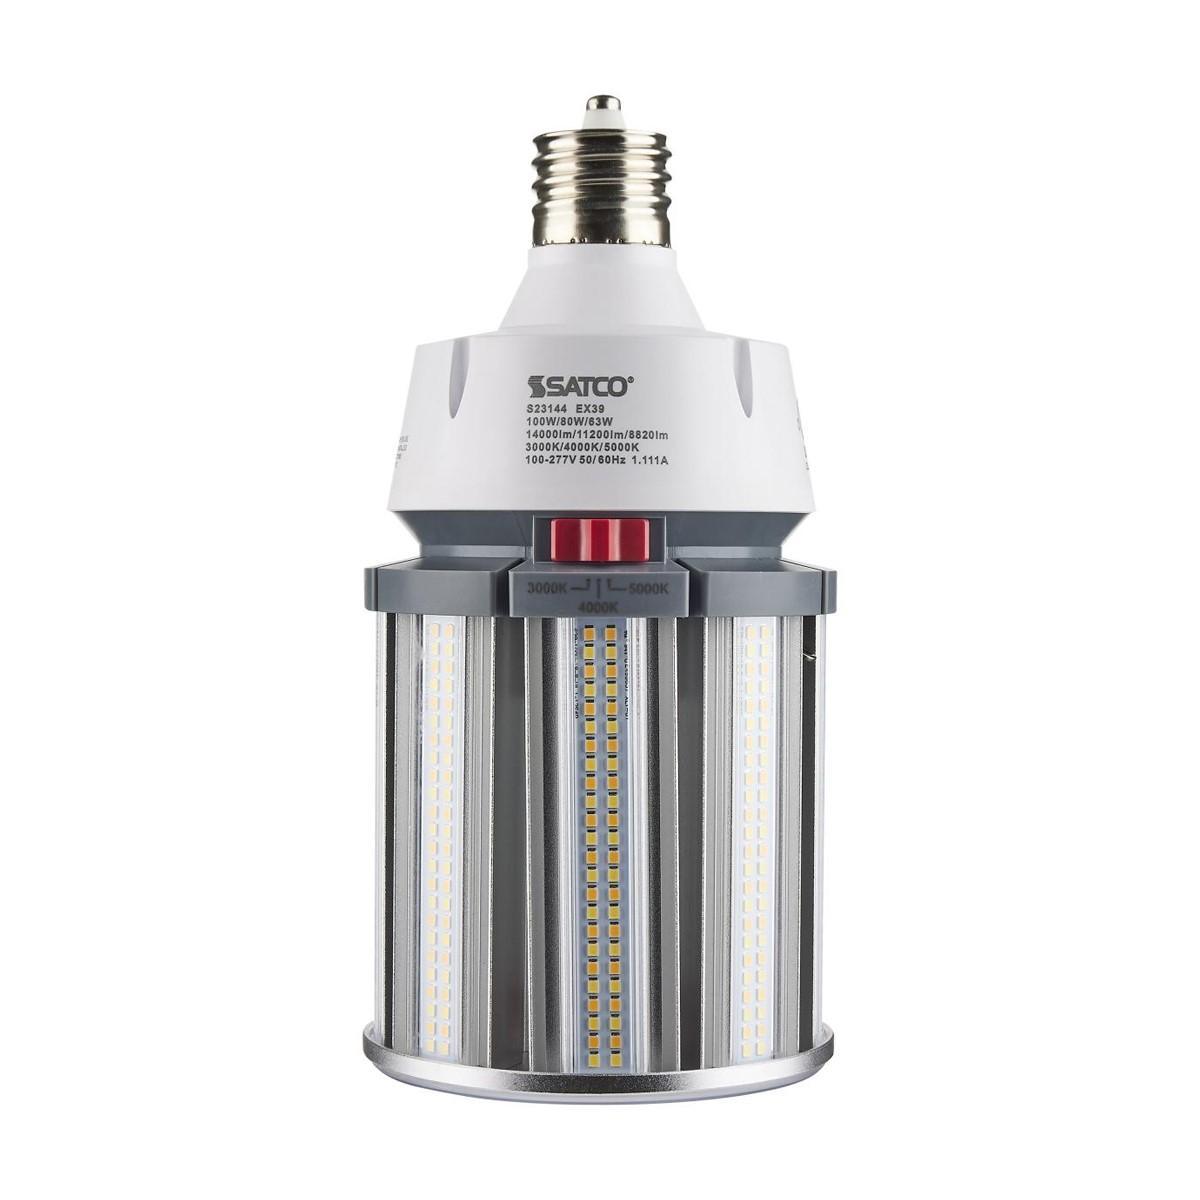 Hi-Pro Retrofit LED Corn Bulb, 100W, 14000 Lumens, Selectable CCT, 30K/40K/50K, EX39 Mogul Extended Base, 120-277V